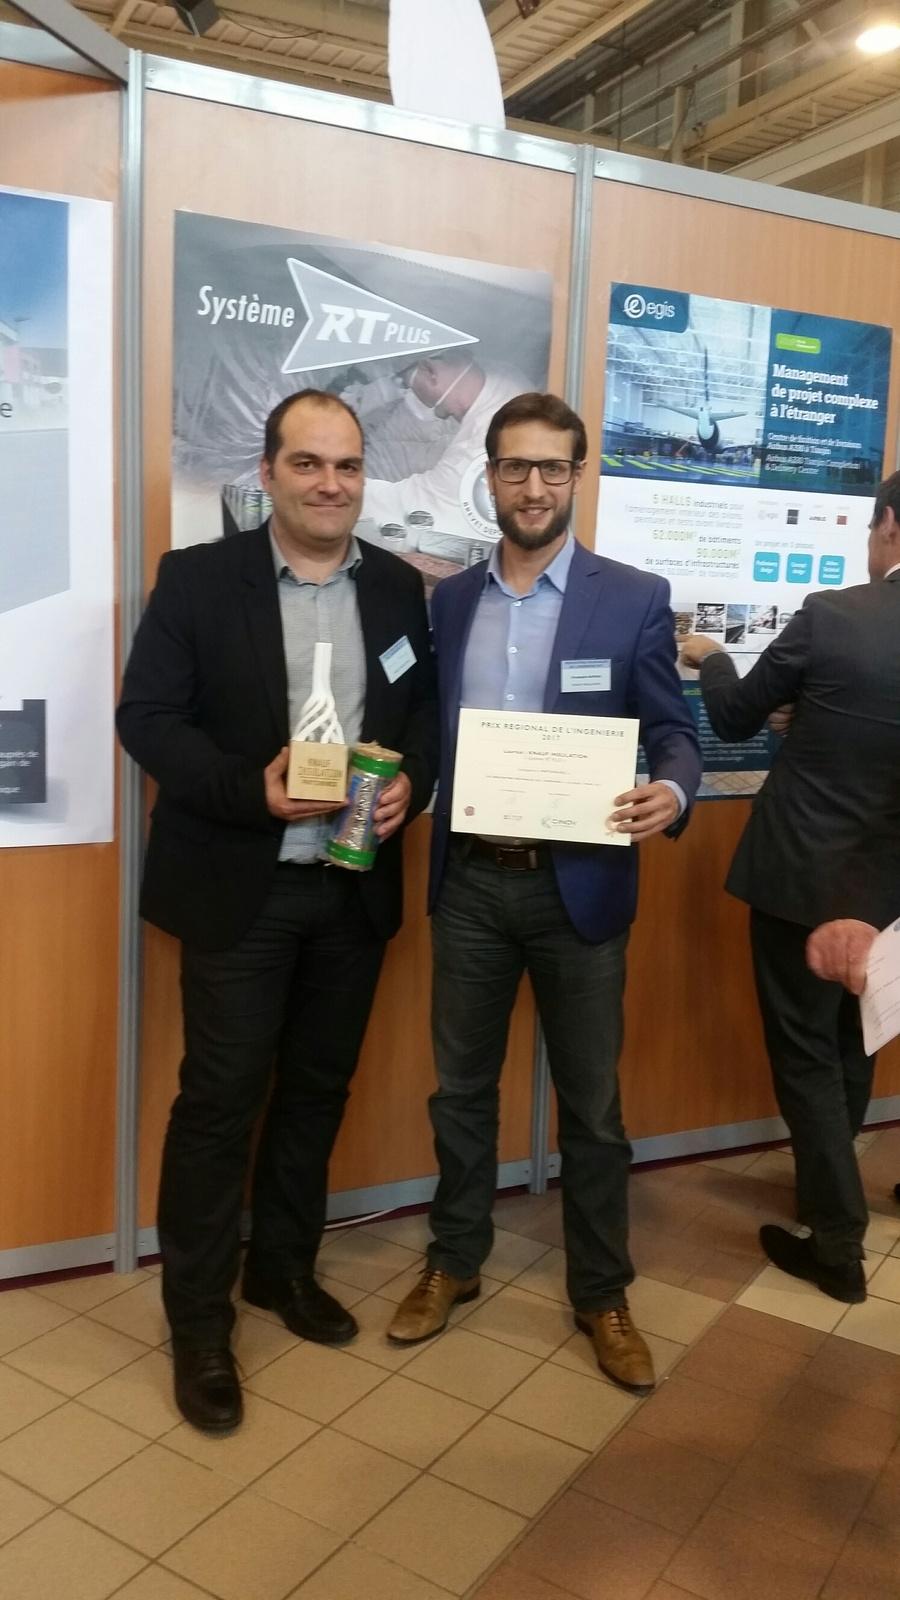 Prix de l'Ingénierie 2017 - Consécration pour le système RT Plus de Knauf Insulation